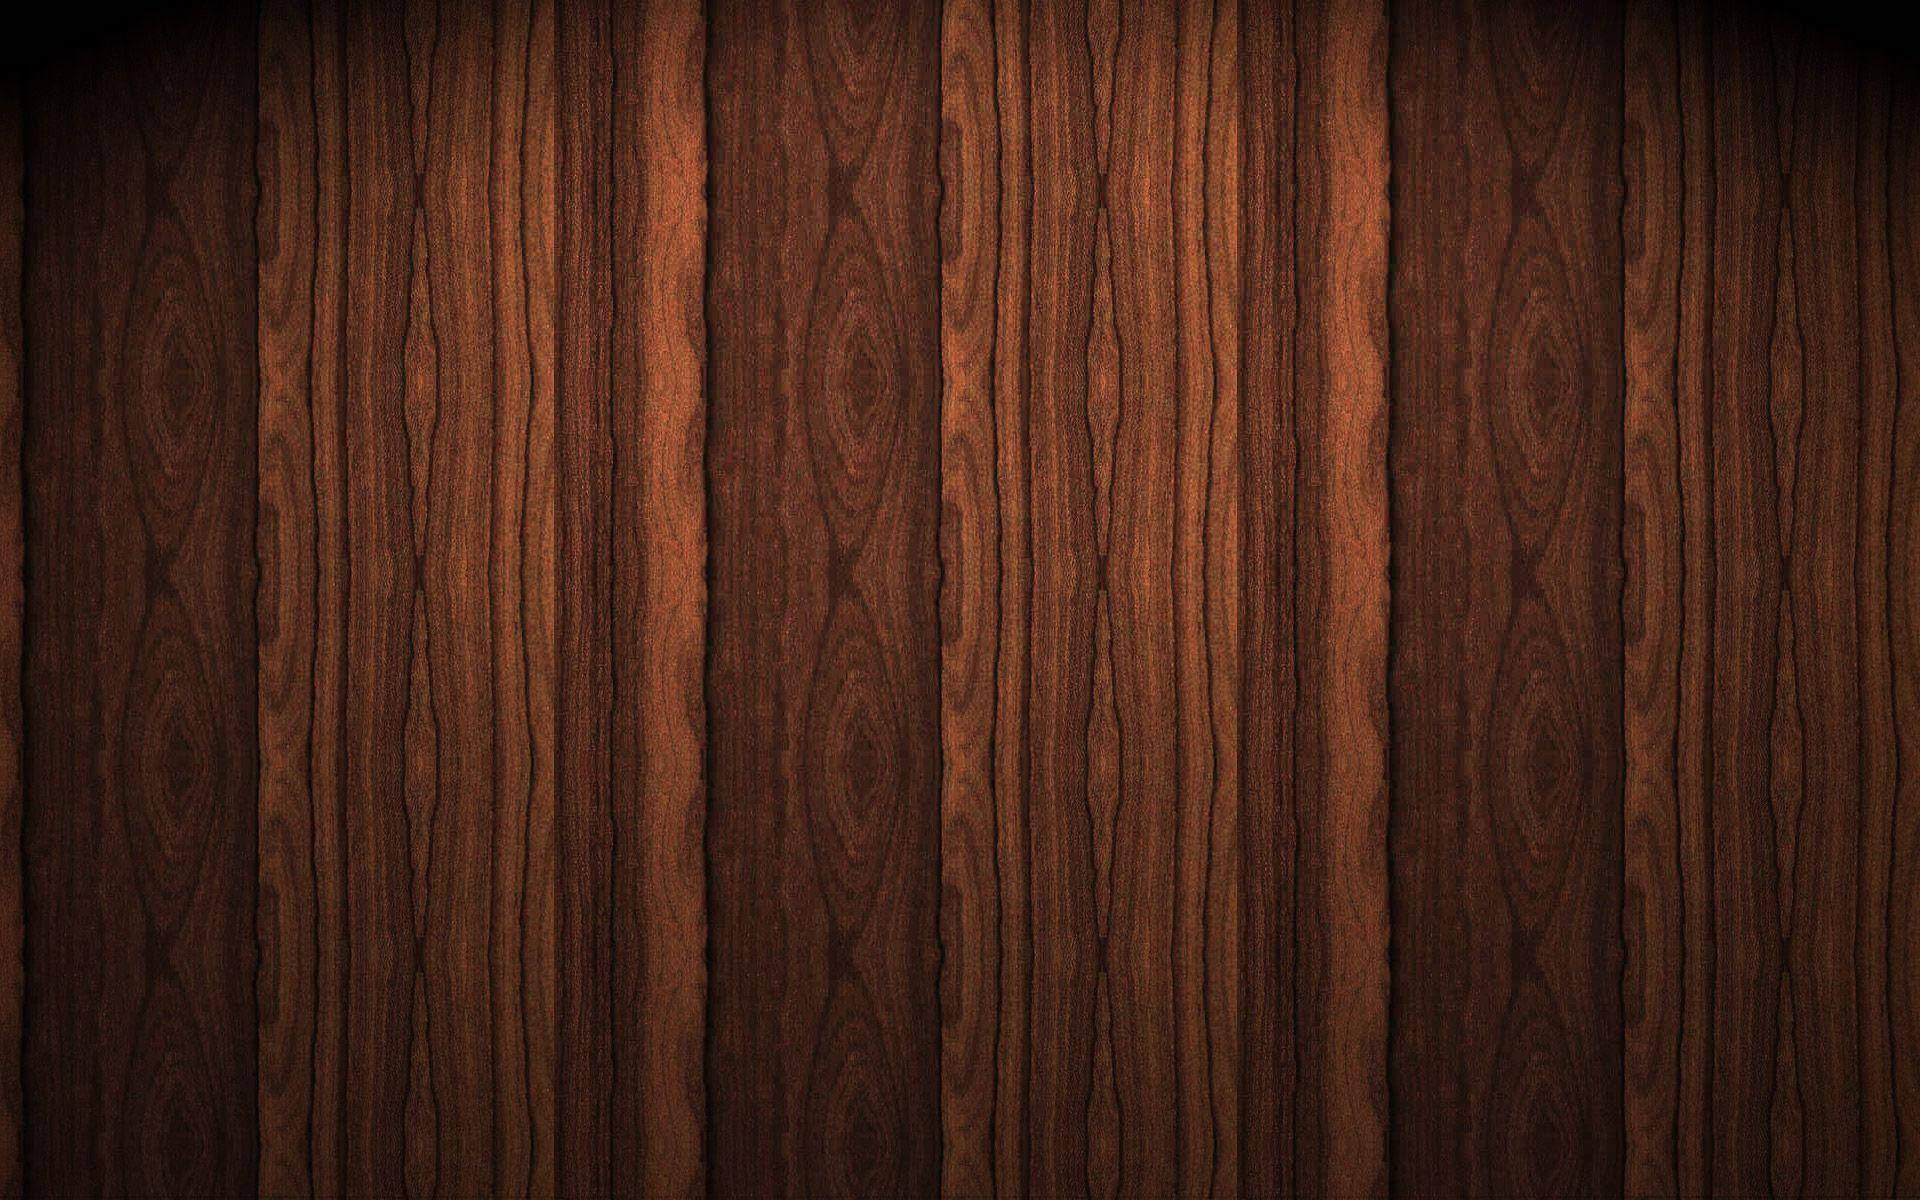 Dark Shiplap Wood Texture Background